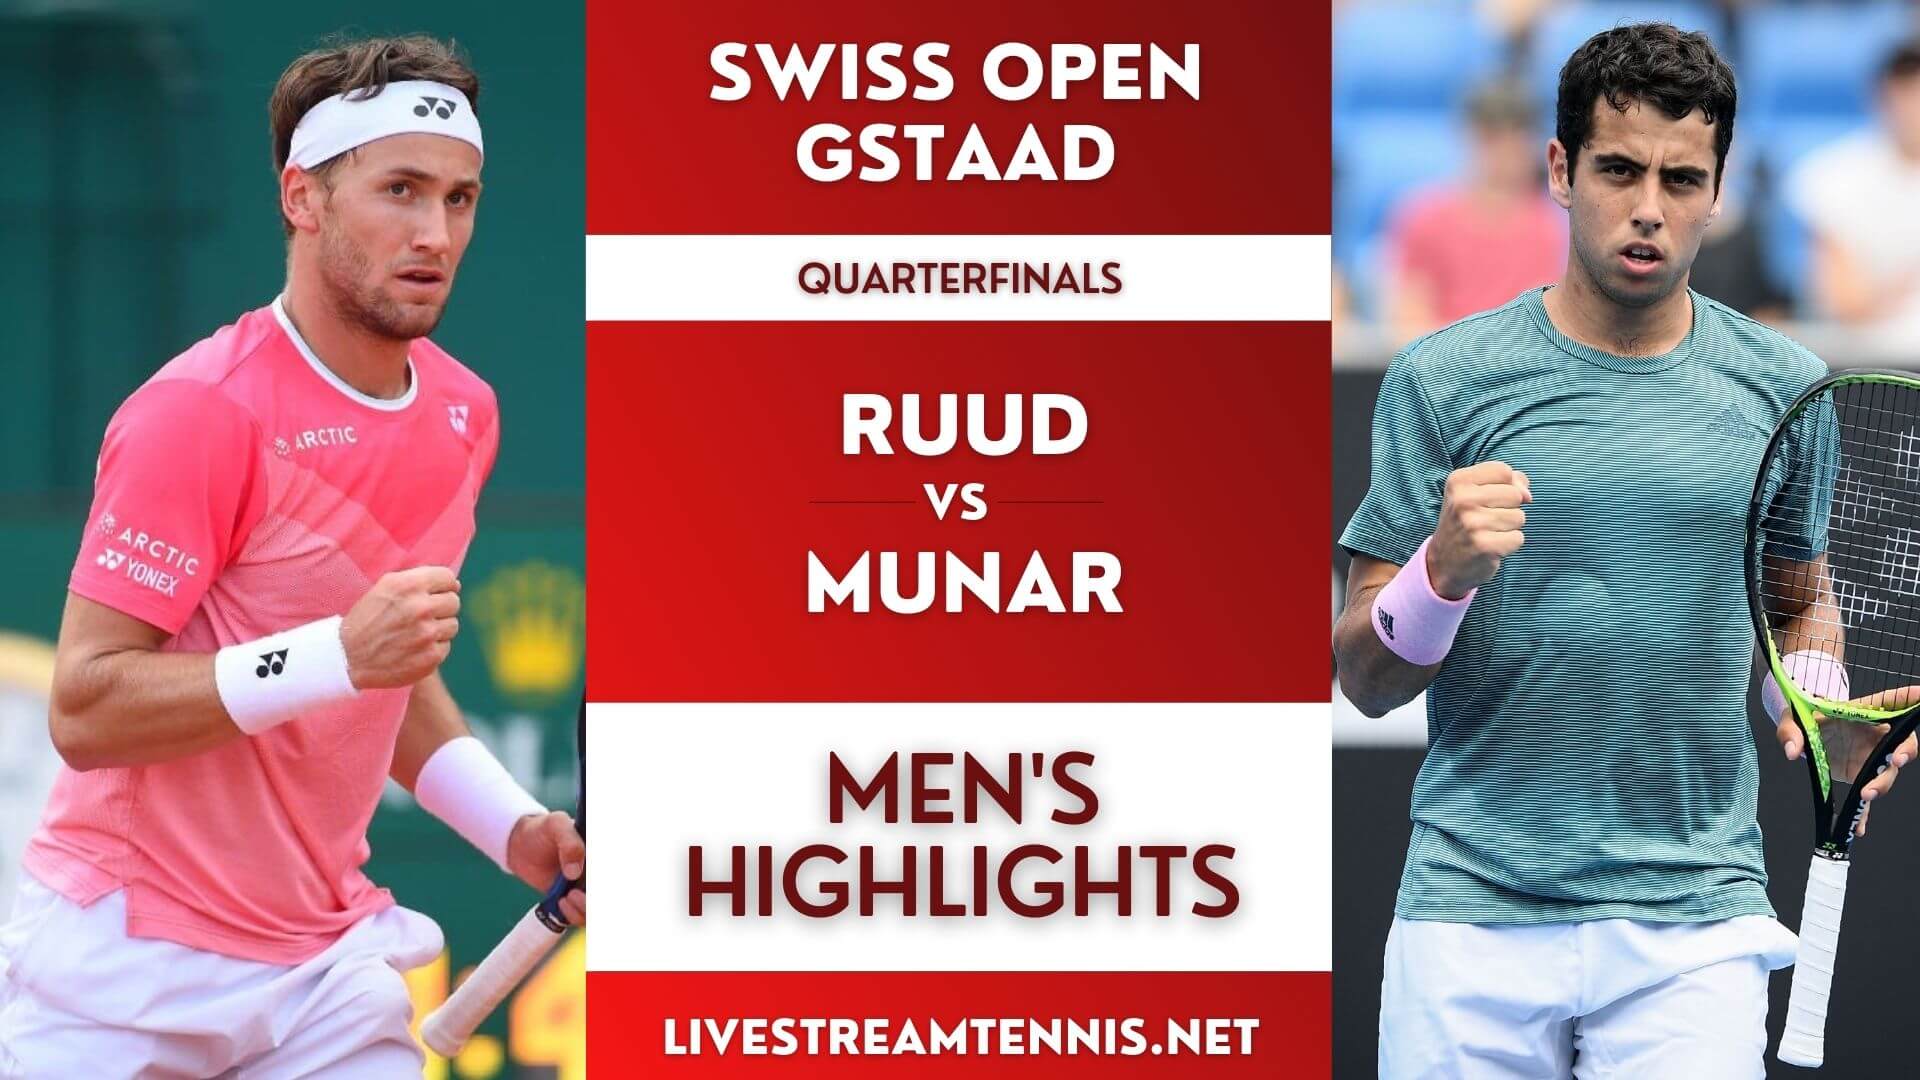 Swiss Open ATP Quarterfinal 2 Highlights 2022